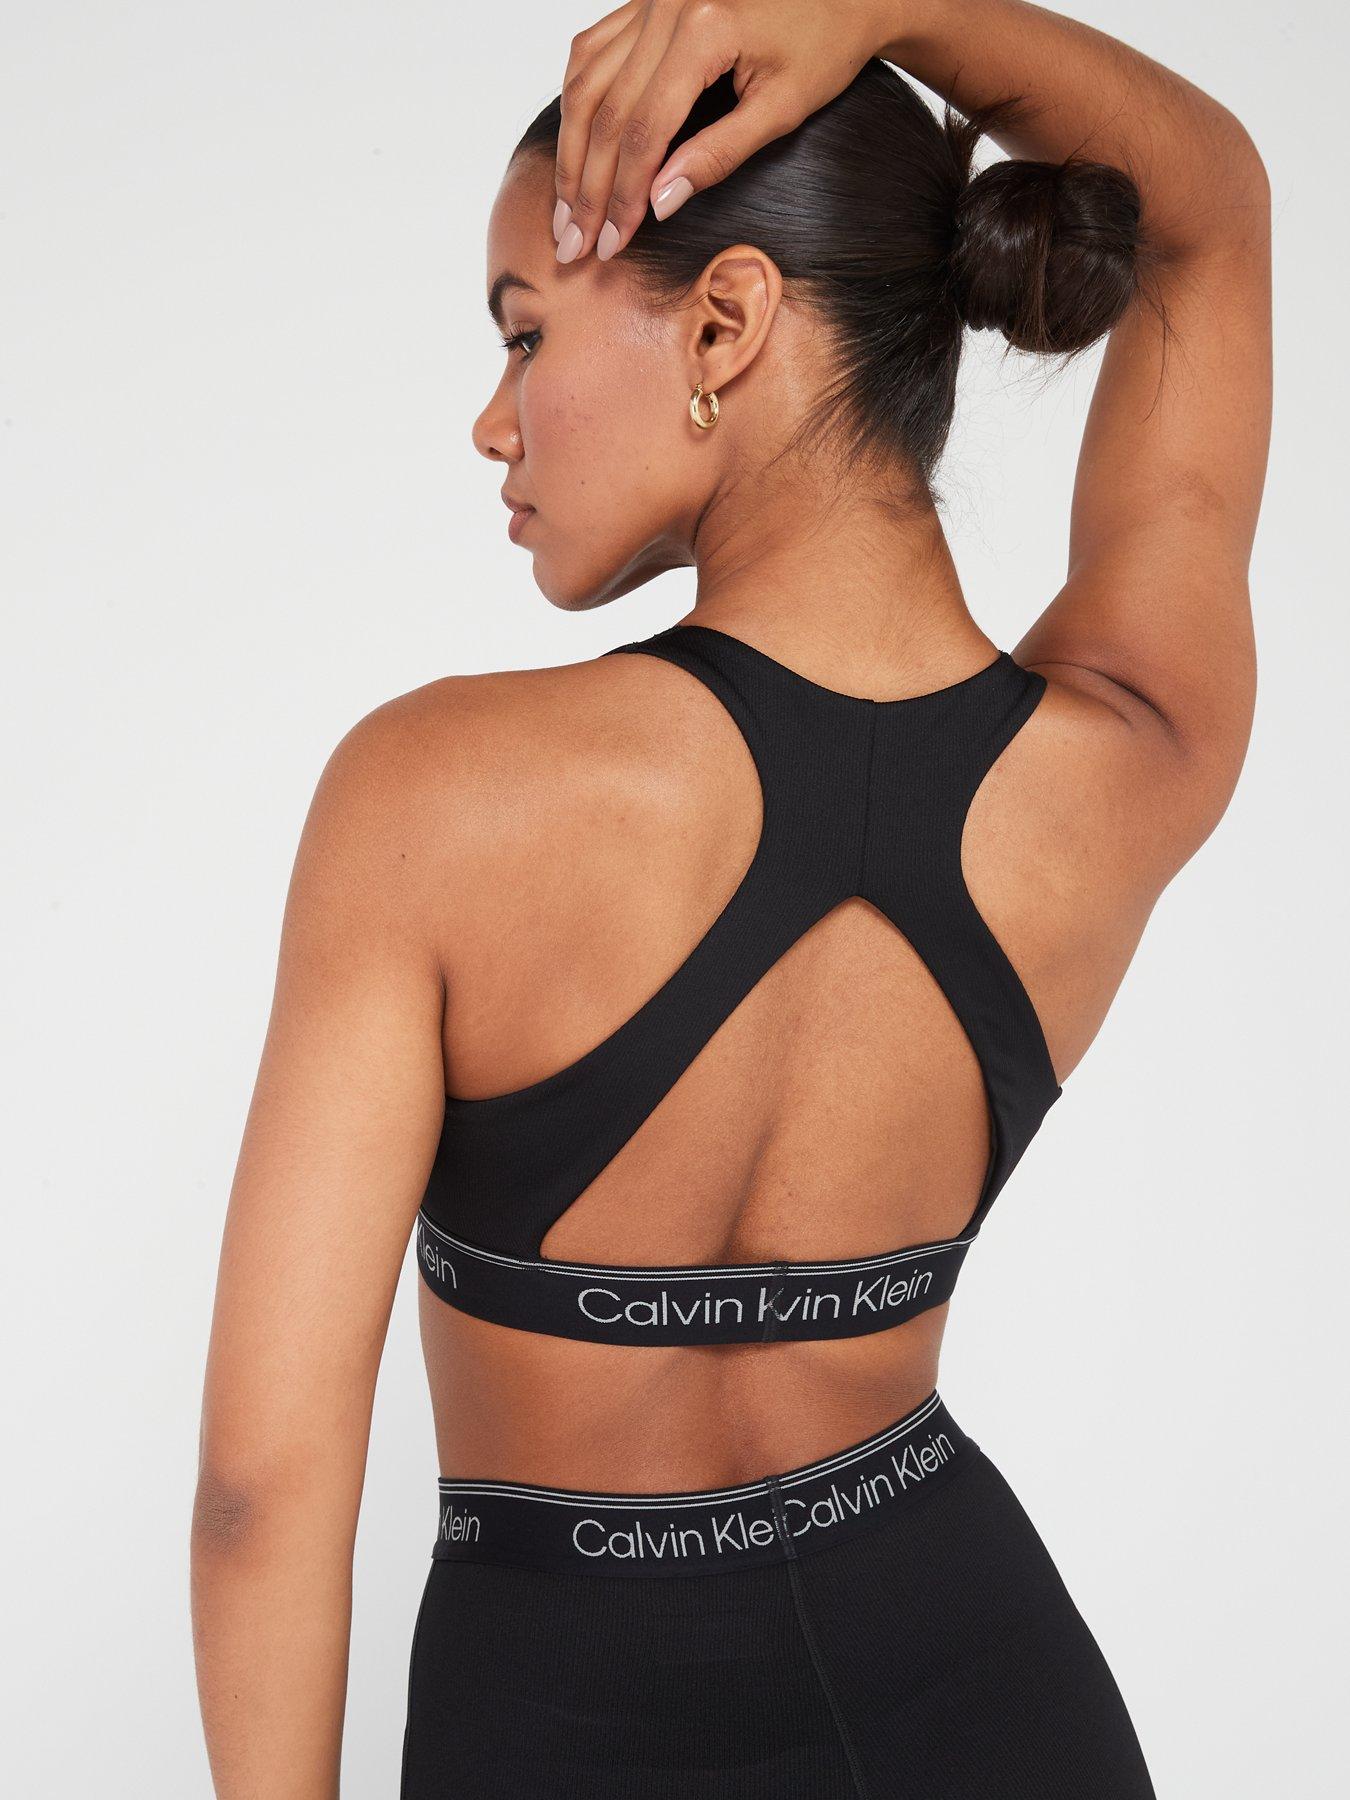 Calvin Klein Performance Medium Support Sports Bra - Black